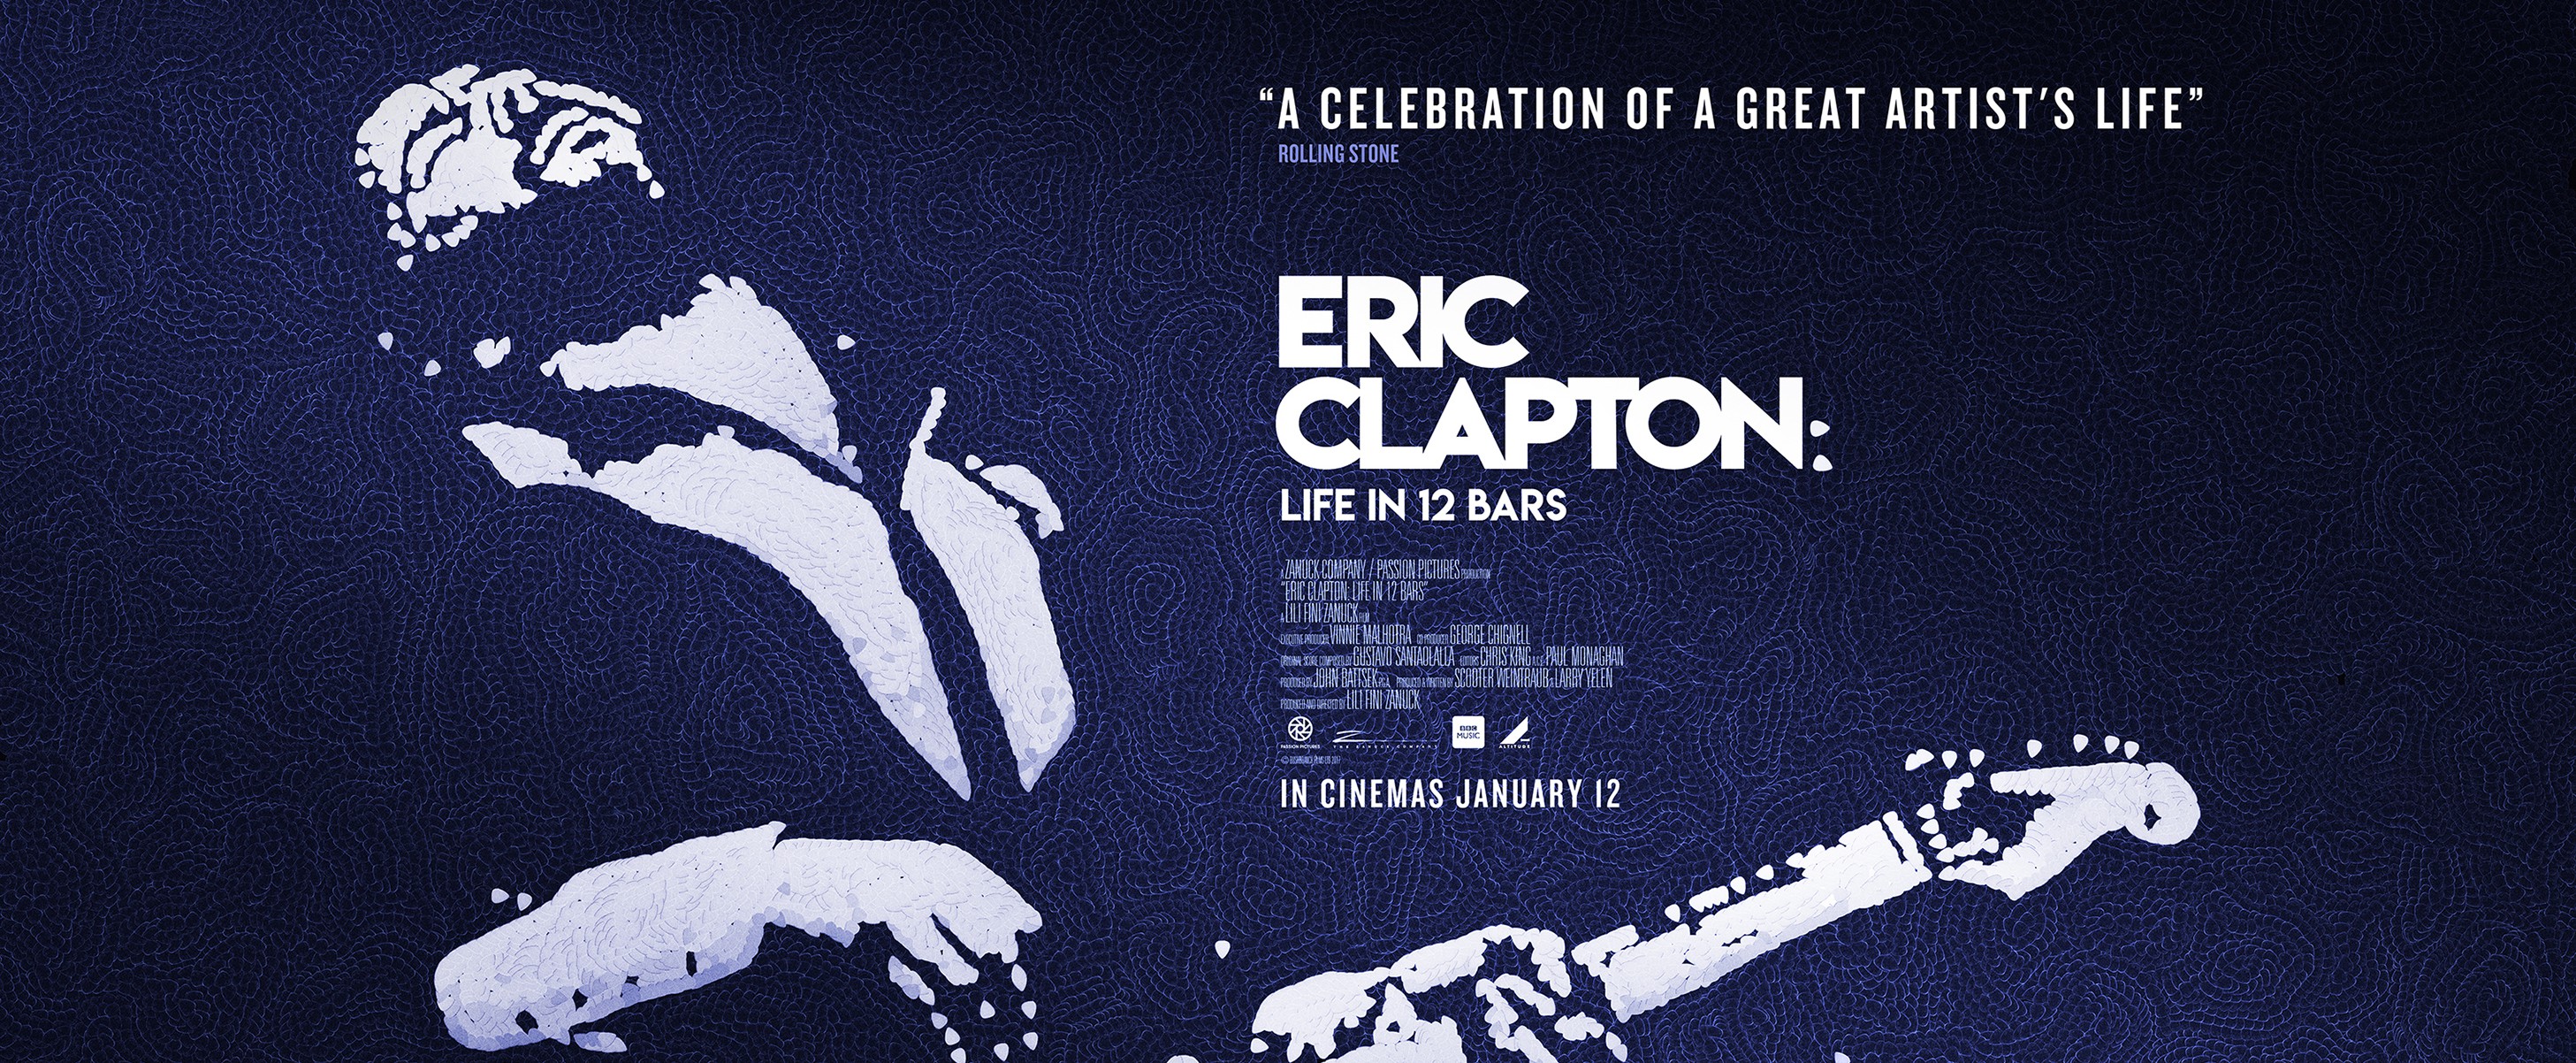 Eric Clapton film